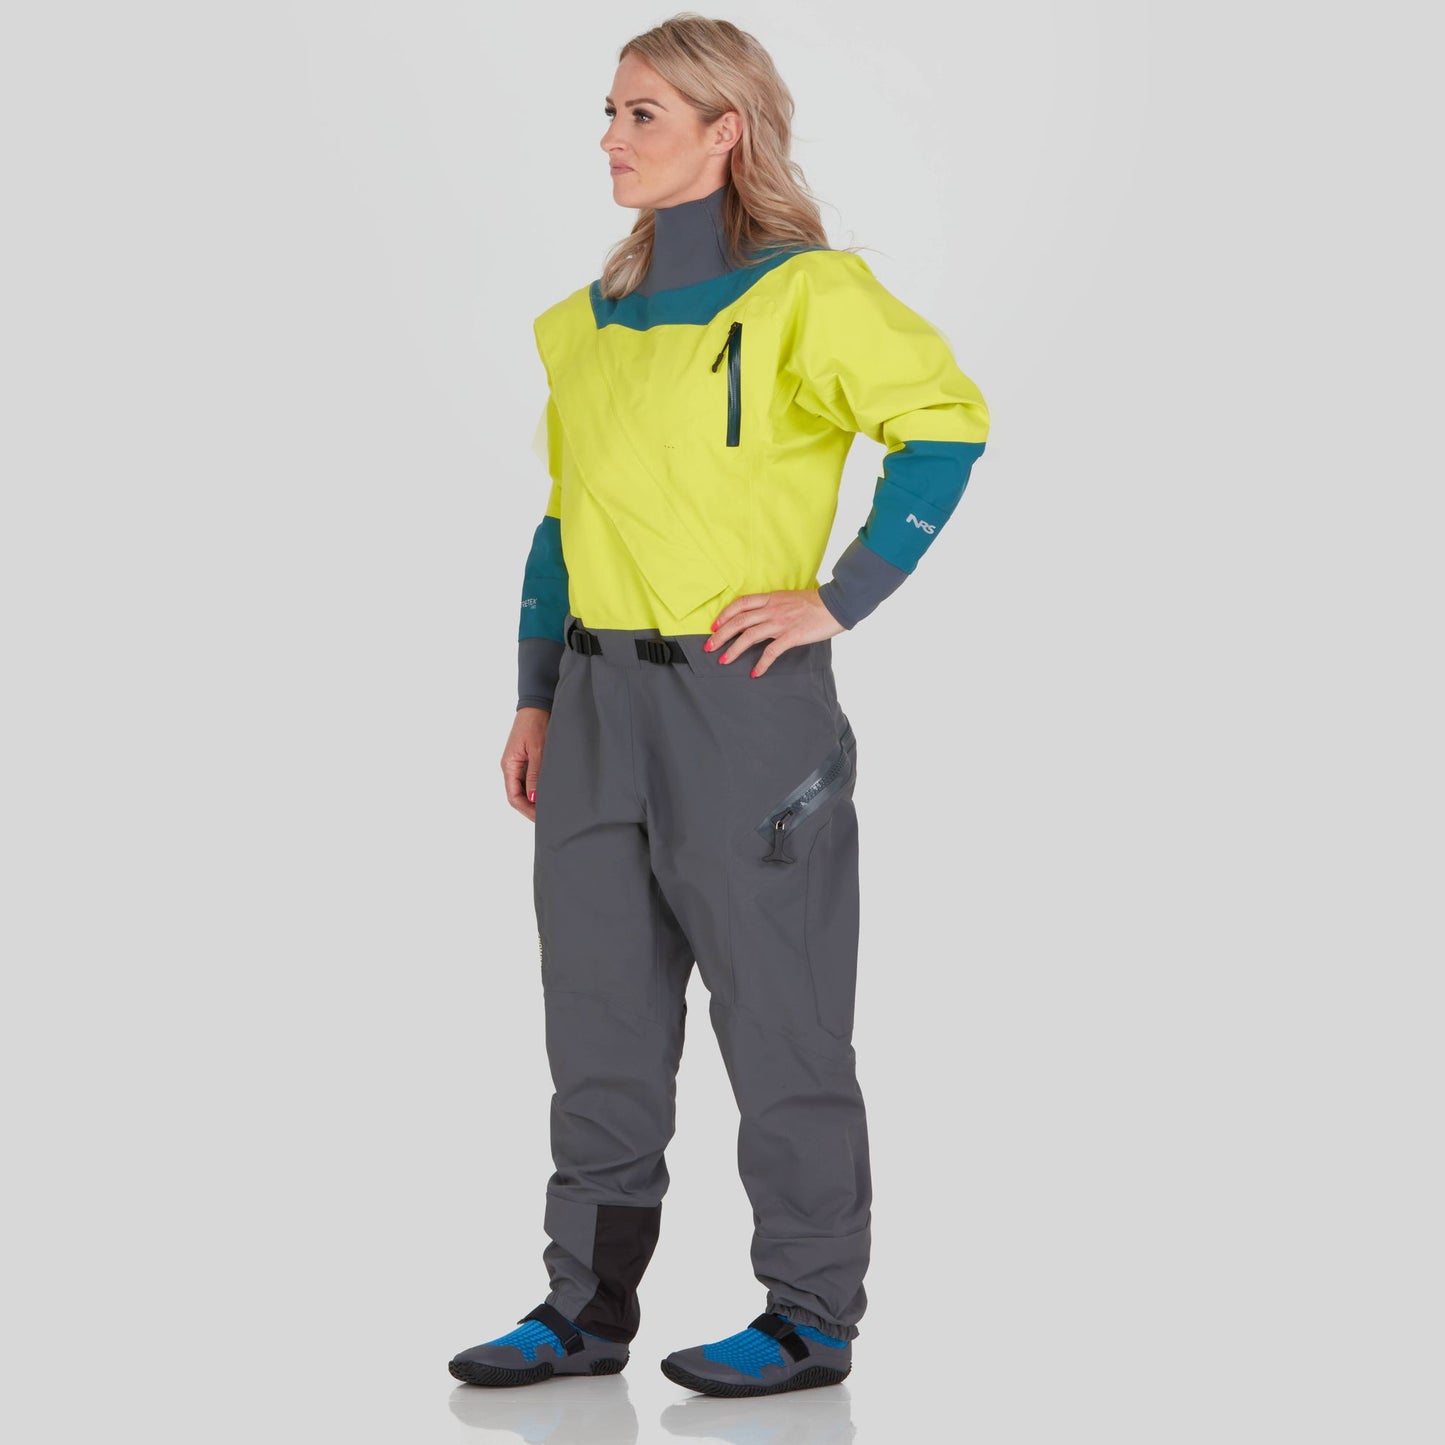 Women's Nomad GORE-TEX Pro Semi-Dry Suit